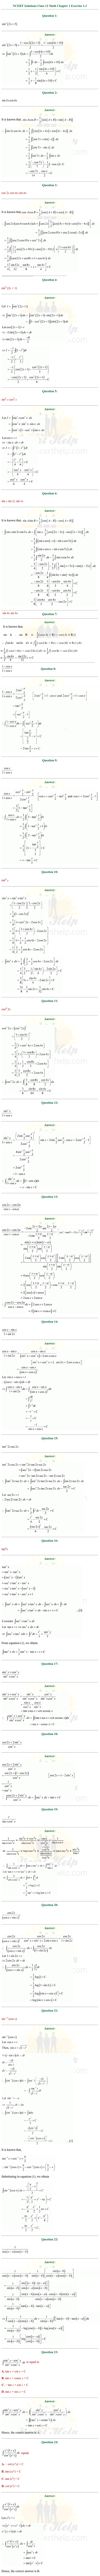 ex.7.3 Class 12 Math Chapter 7 ncert solutions